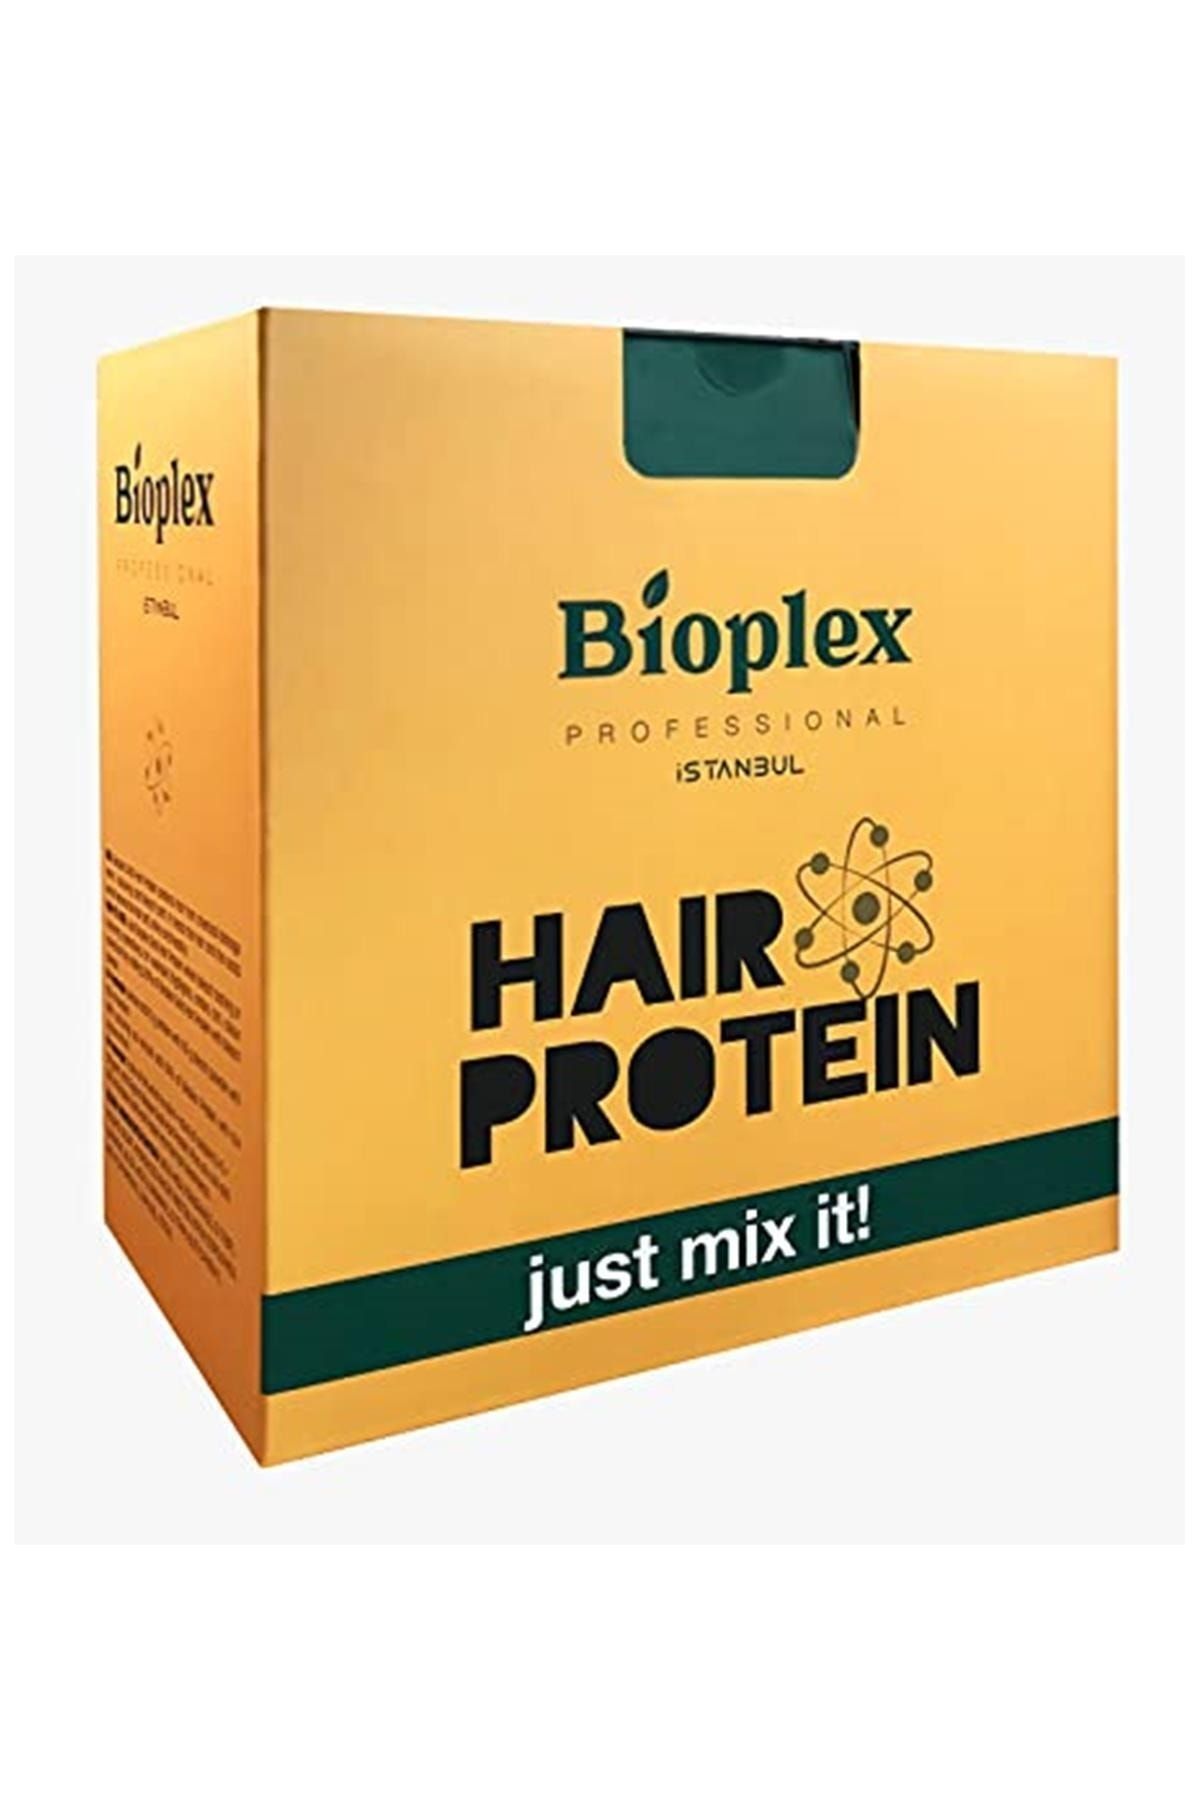 Bioplex Saç Bakım Proteini / Hair Protein - Saç Açma Ve Boya Işlemlerinde Yıpranmalara Karşı Özel Ürün 500gr